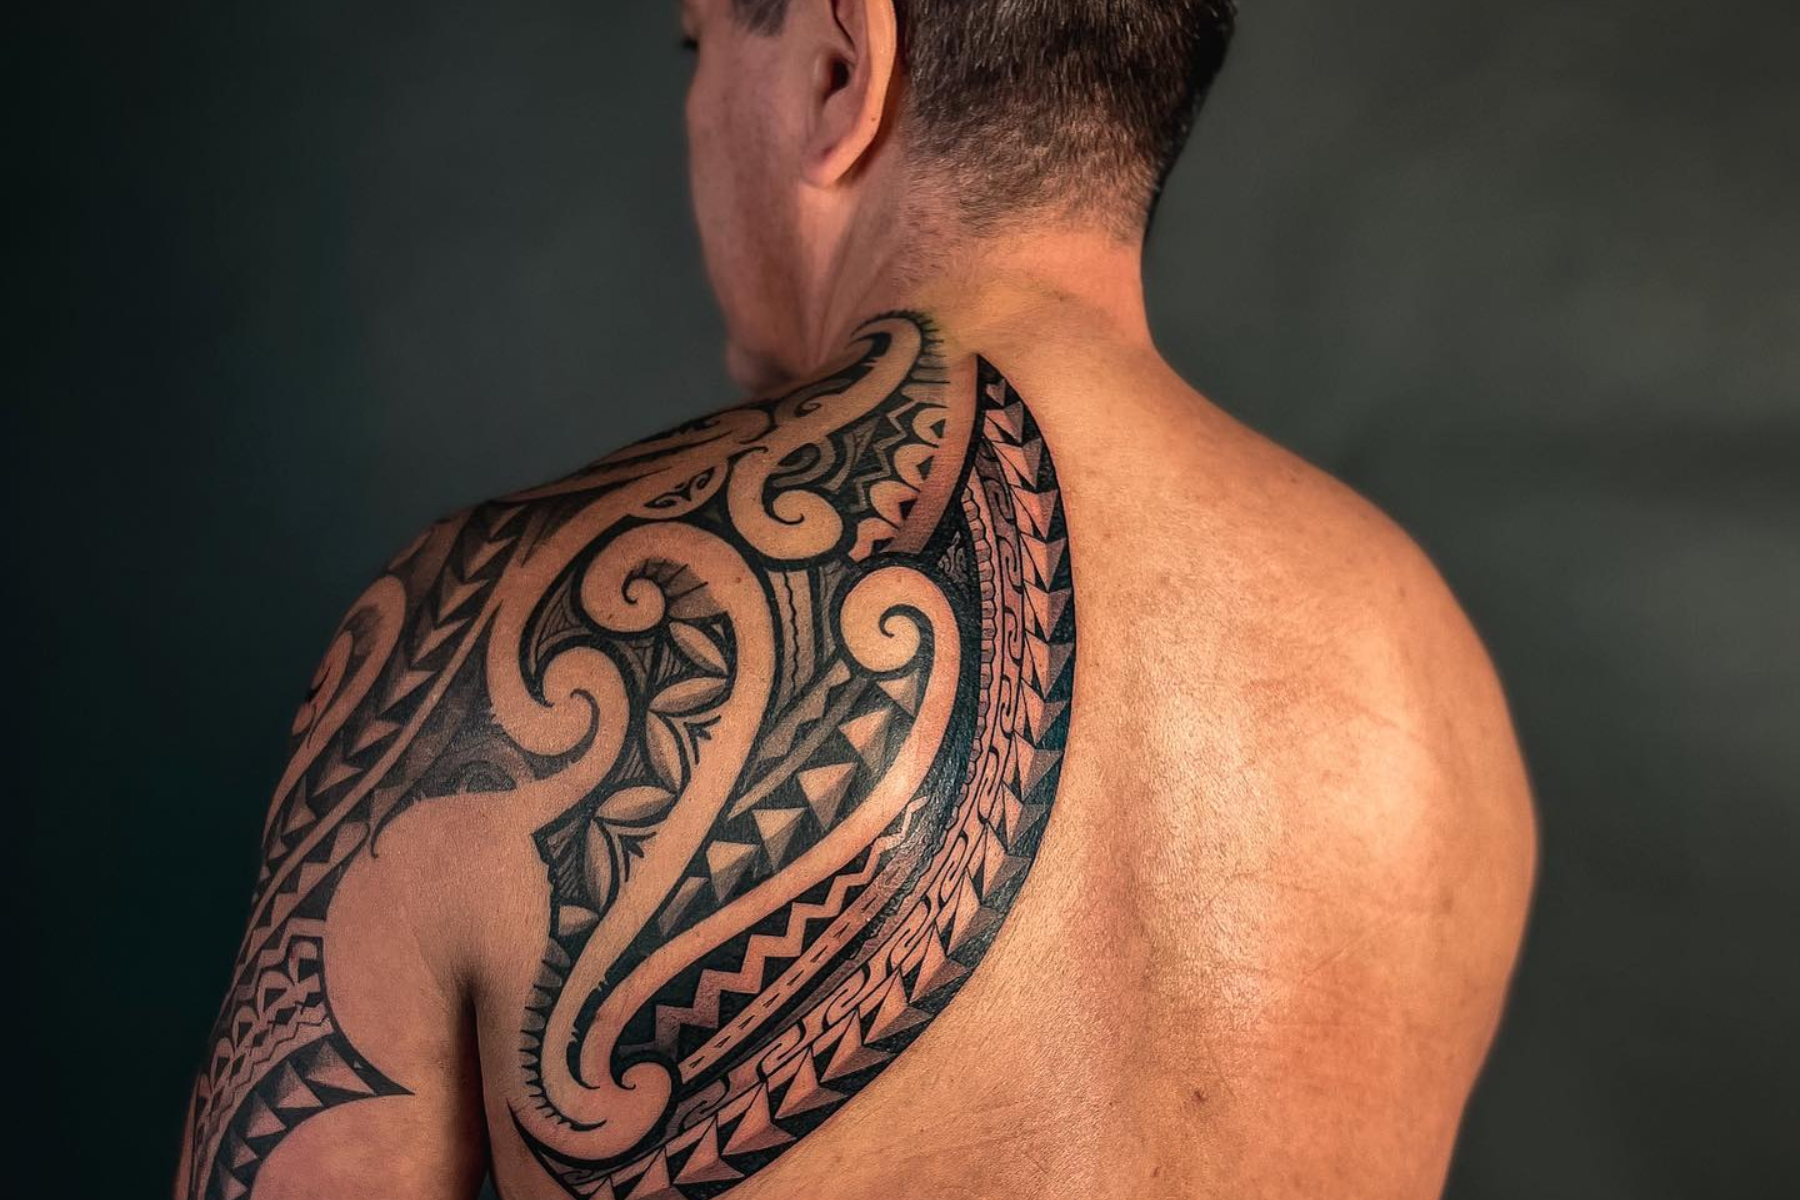 A man has a left back shoulder tattoo